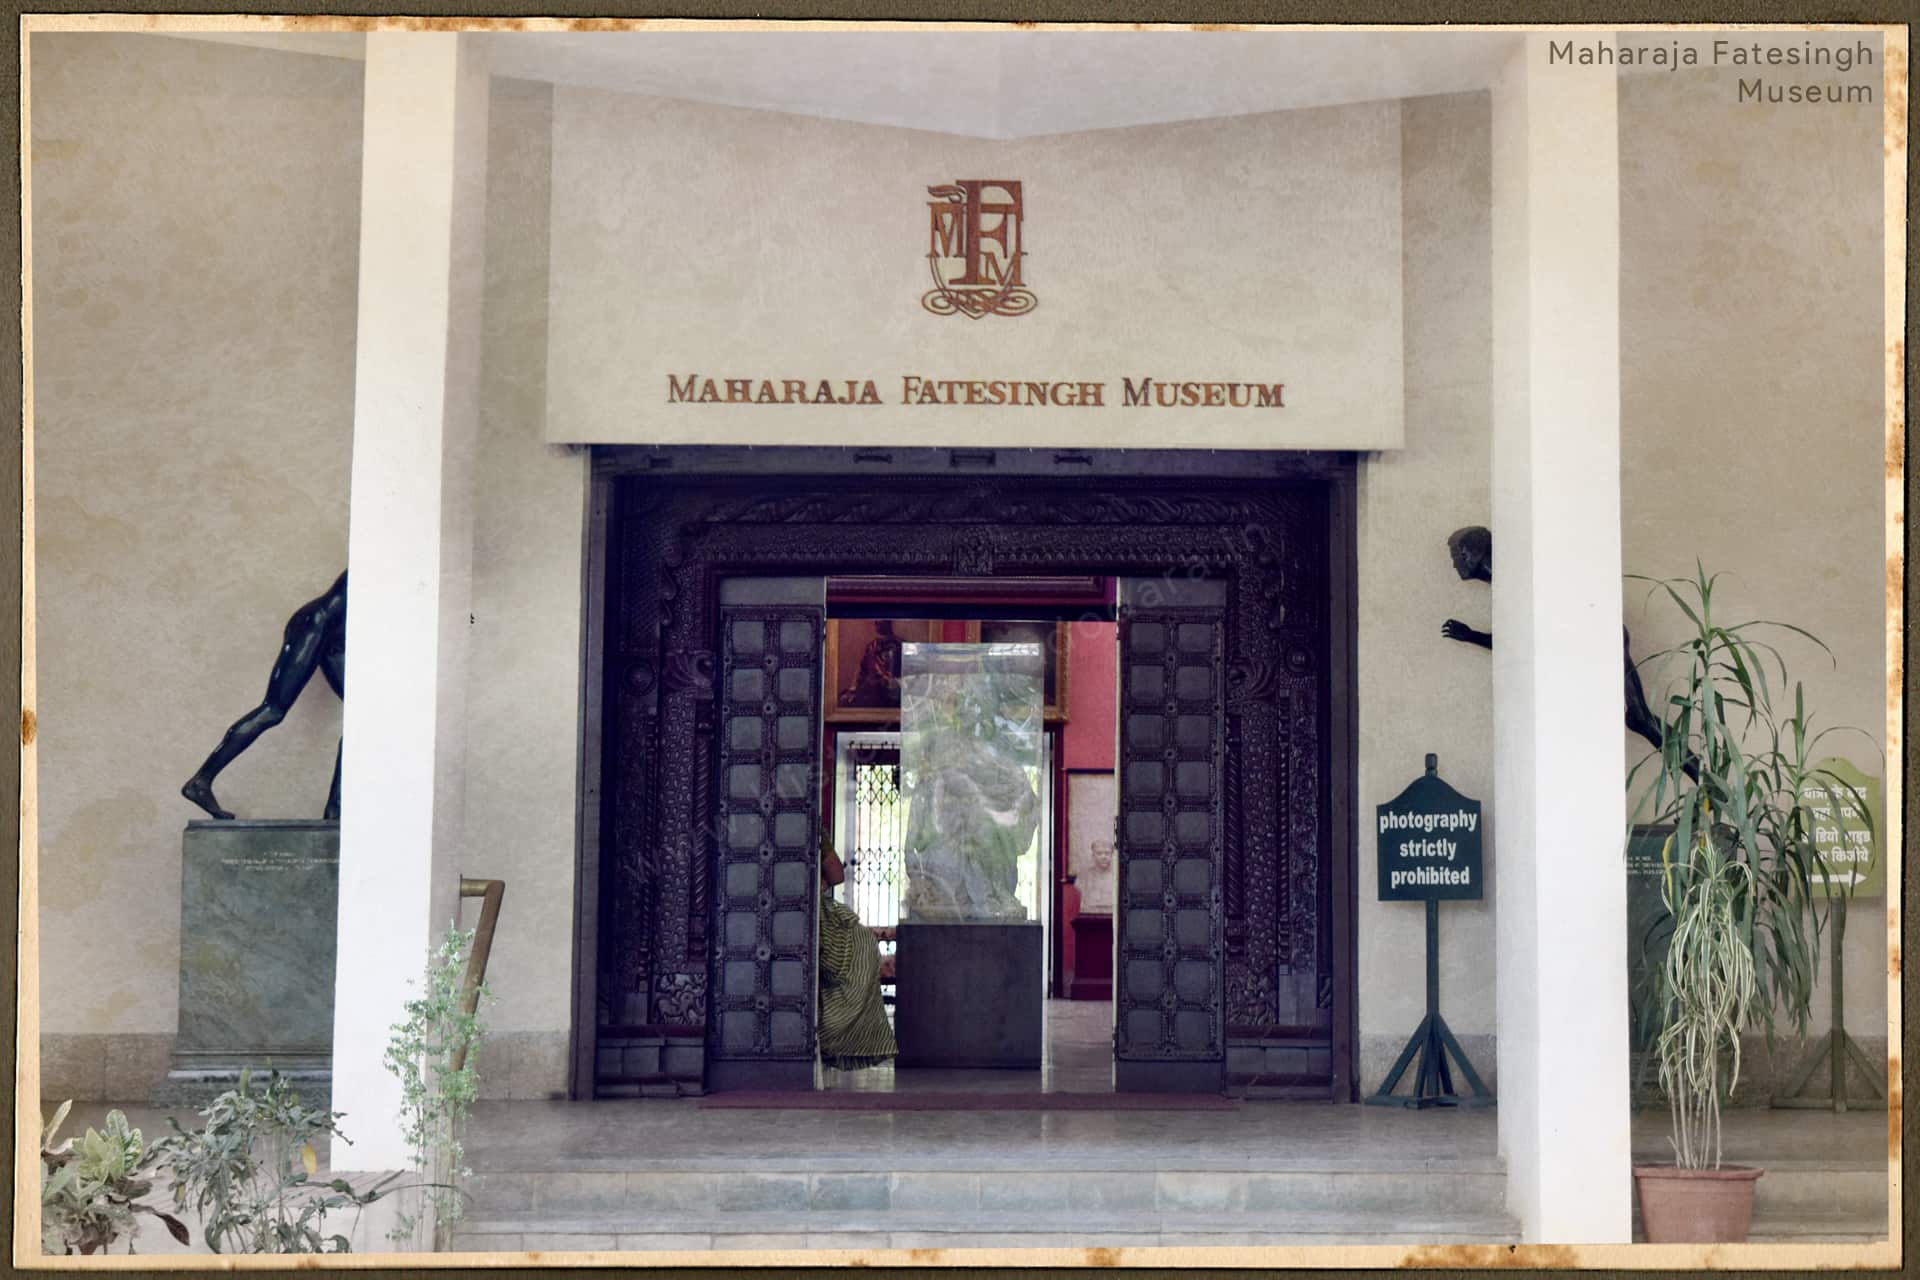 Maharaja Fatesingh Museum